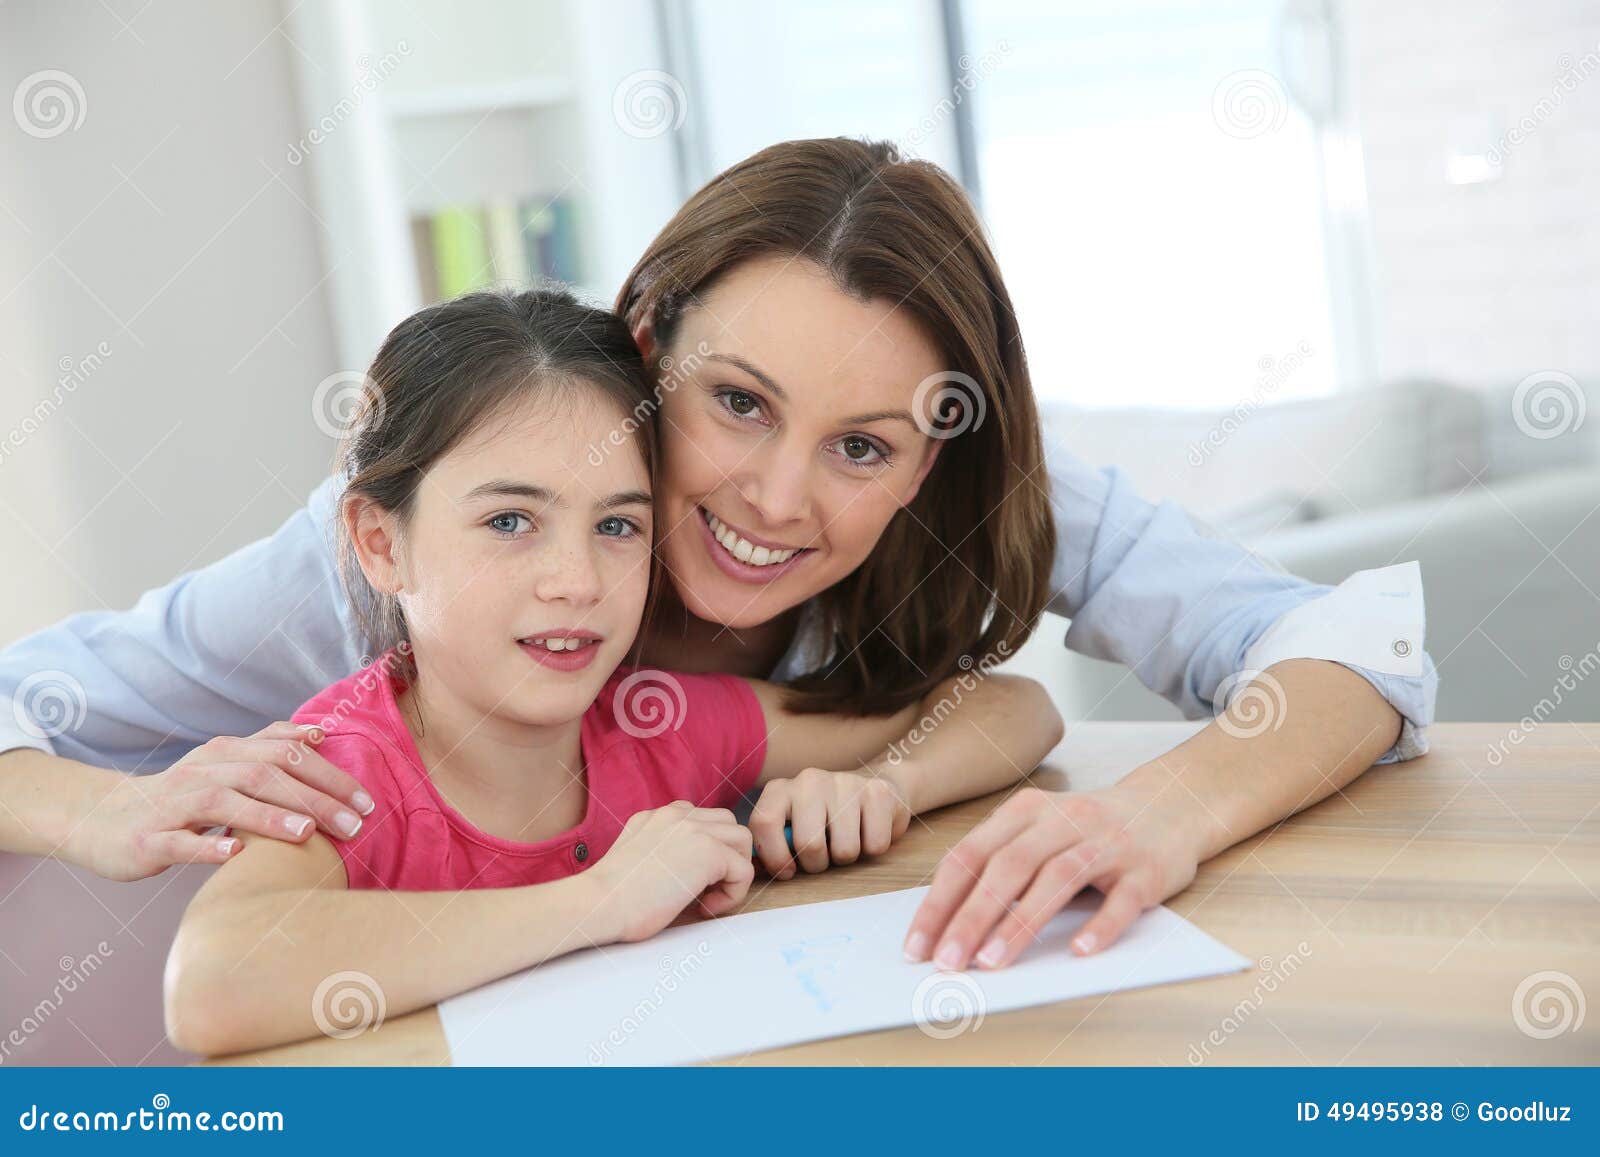 Русская молодая мама учит. Мама научила дочь. Дочь преподает урок маме. Мама учит девочку. Мама учит дочку картинки.